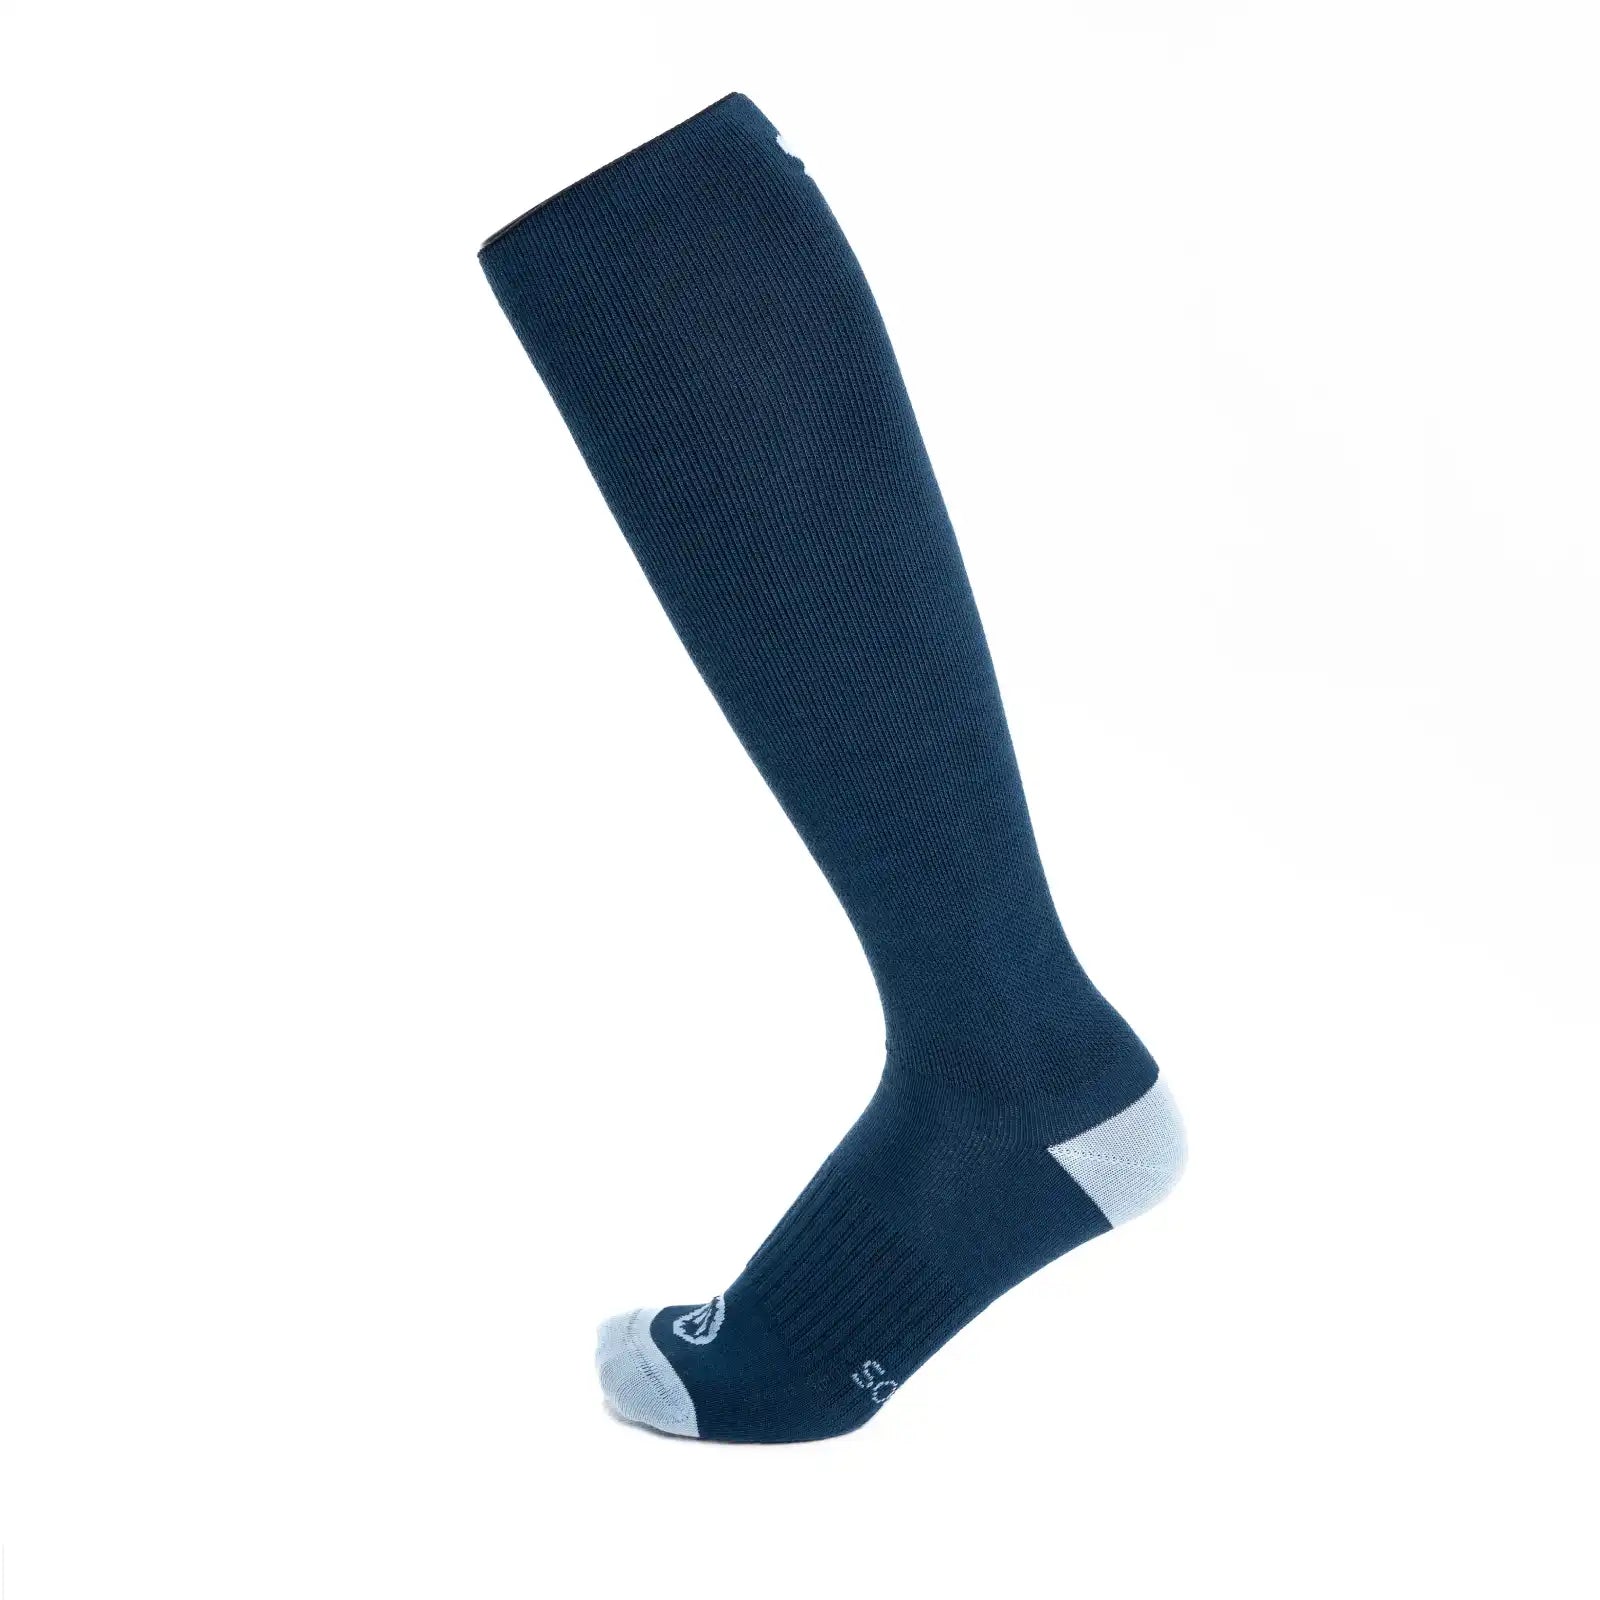 Calcetines de compresión de algodón, altos, color color azul oscuro para hombre y mujer